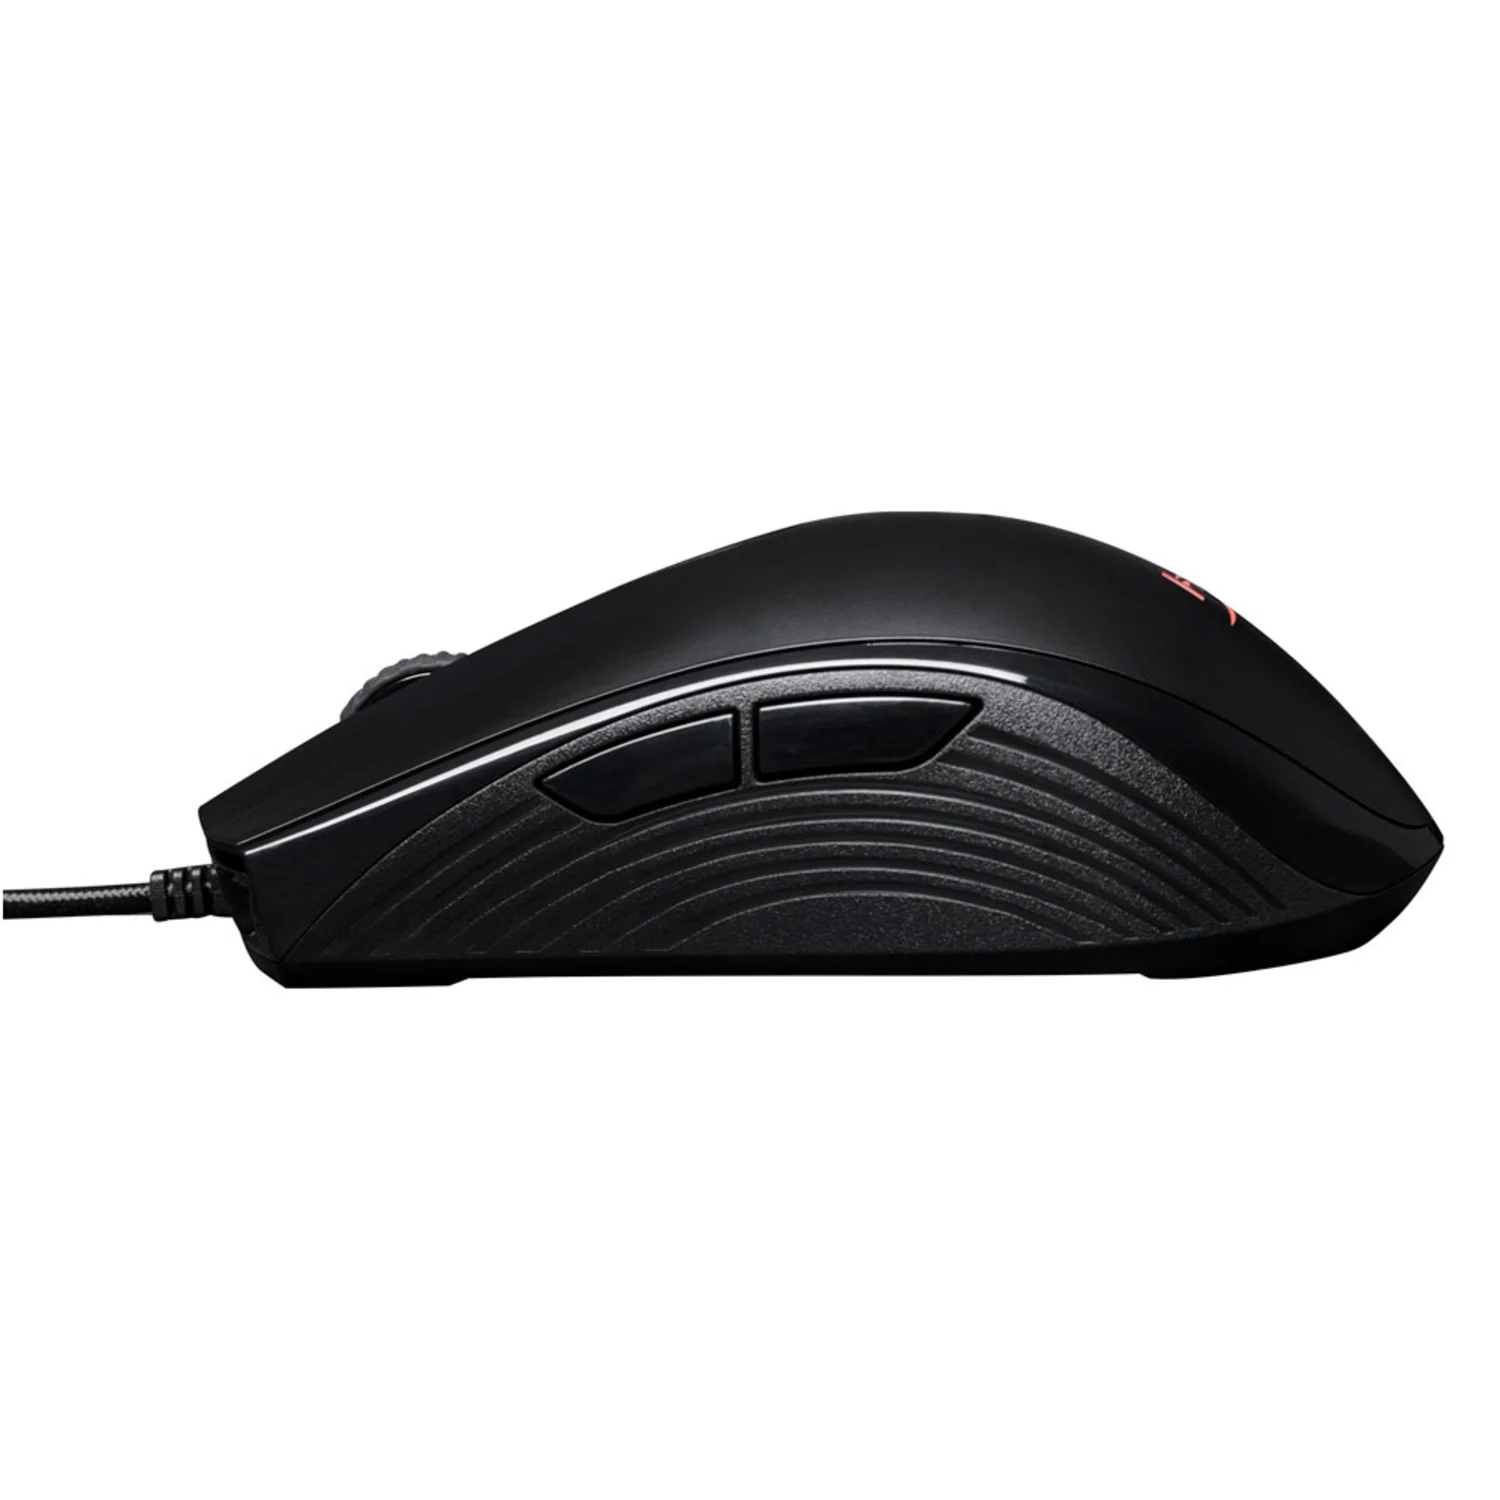 Mouse Kingston Hyper X Pulsefire Core - Preto (HX-MC004B)